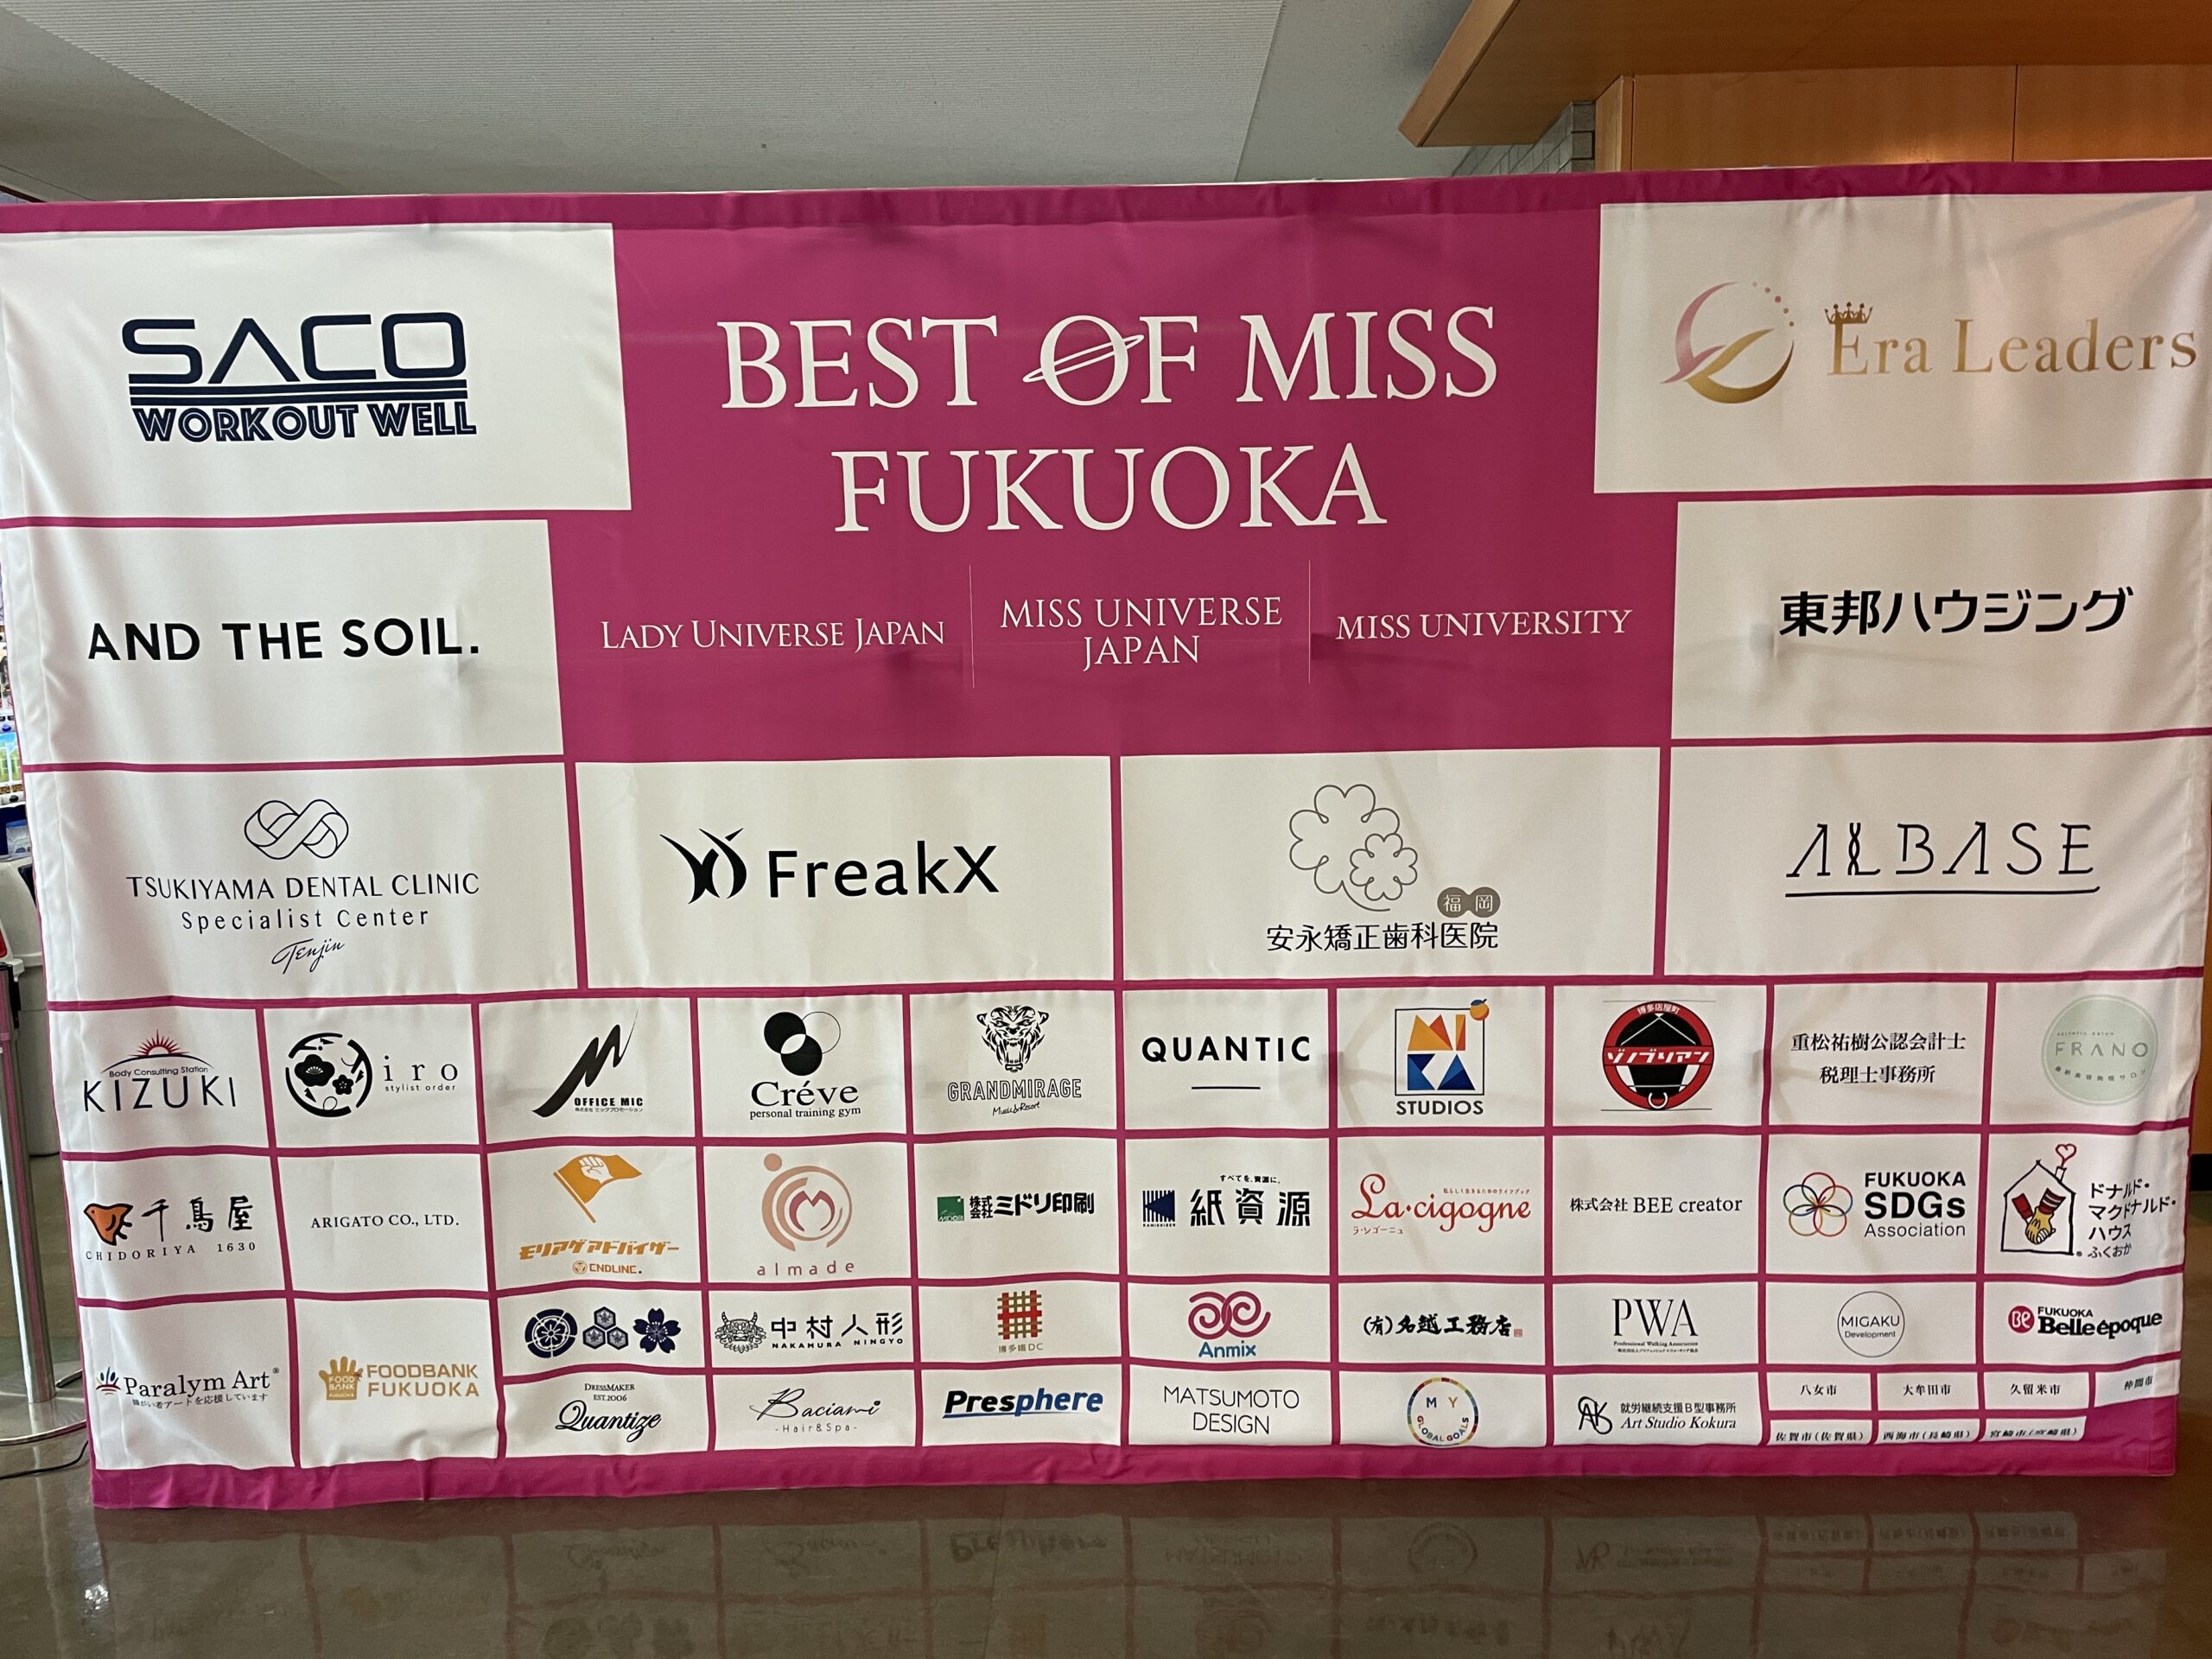 Best of Miss FUKUOKA